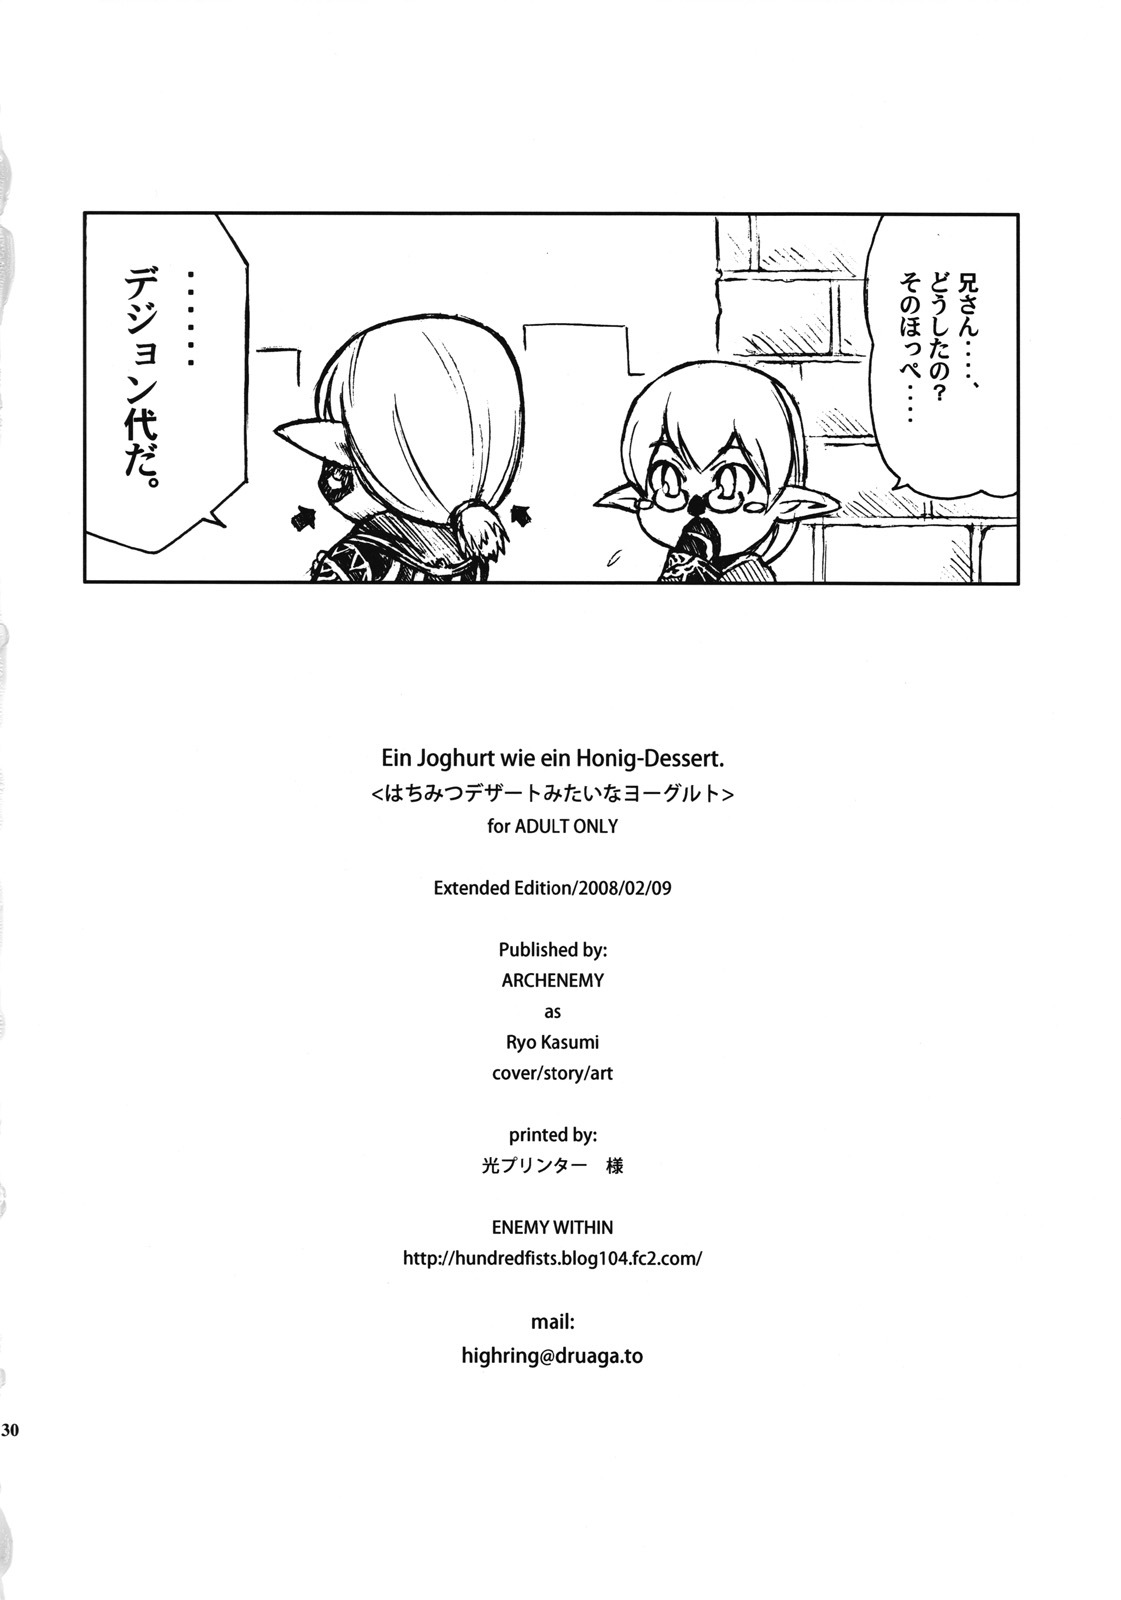 [ARCHENEMY (Kasumi Ryo)] Ein Joghurt wie ein Honig-Dessert. EXTENDED EDITION (Final Fantasy XI) page 29 full